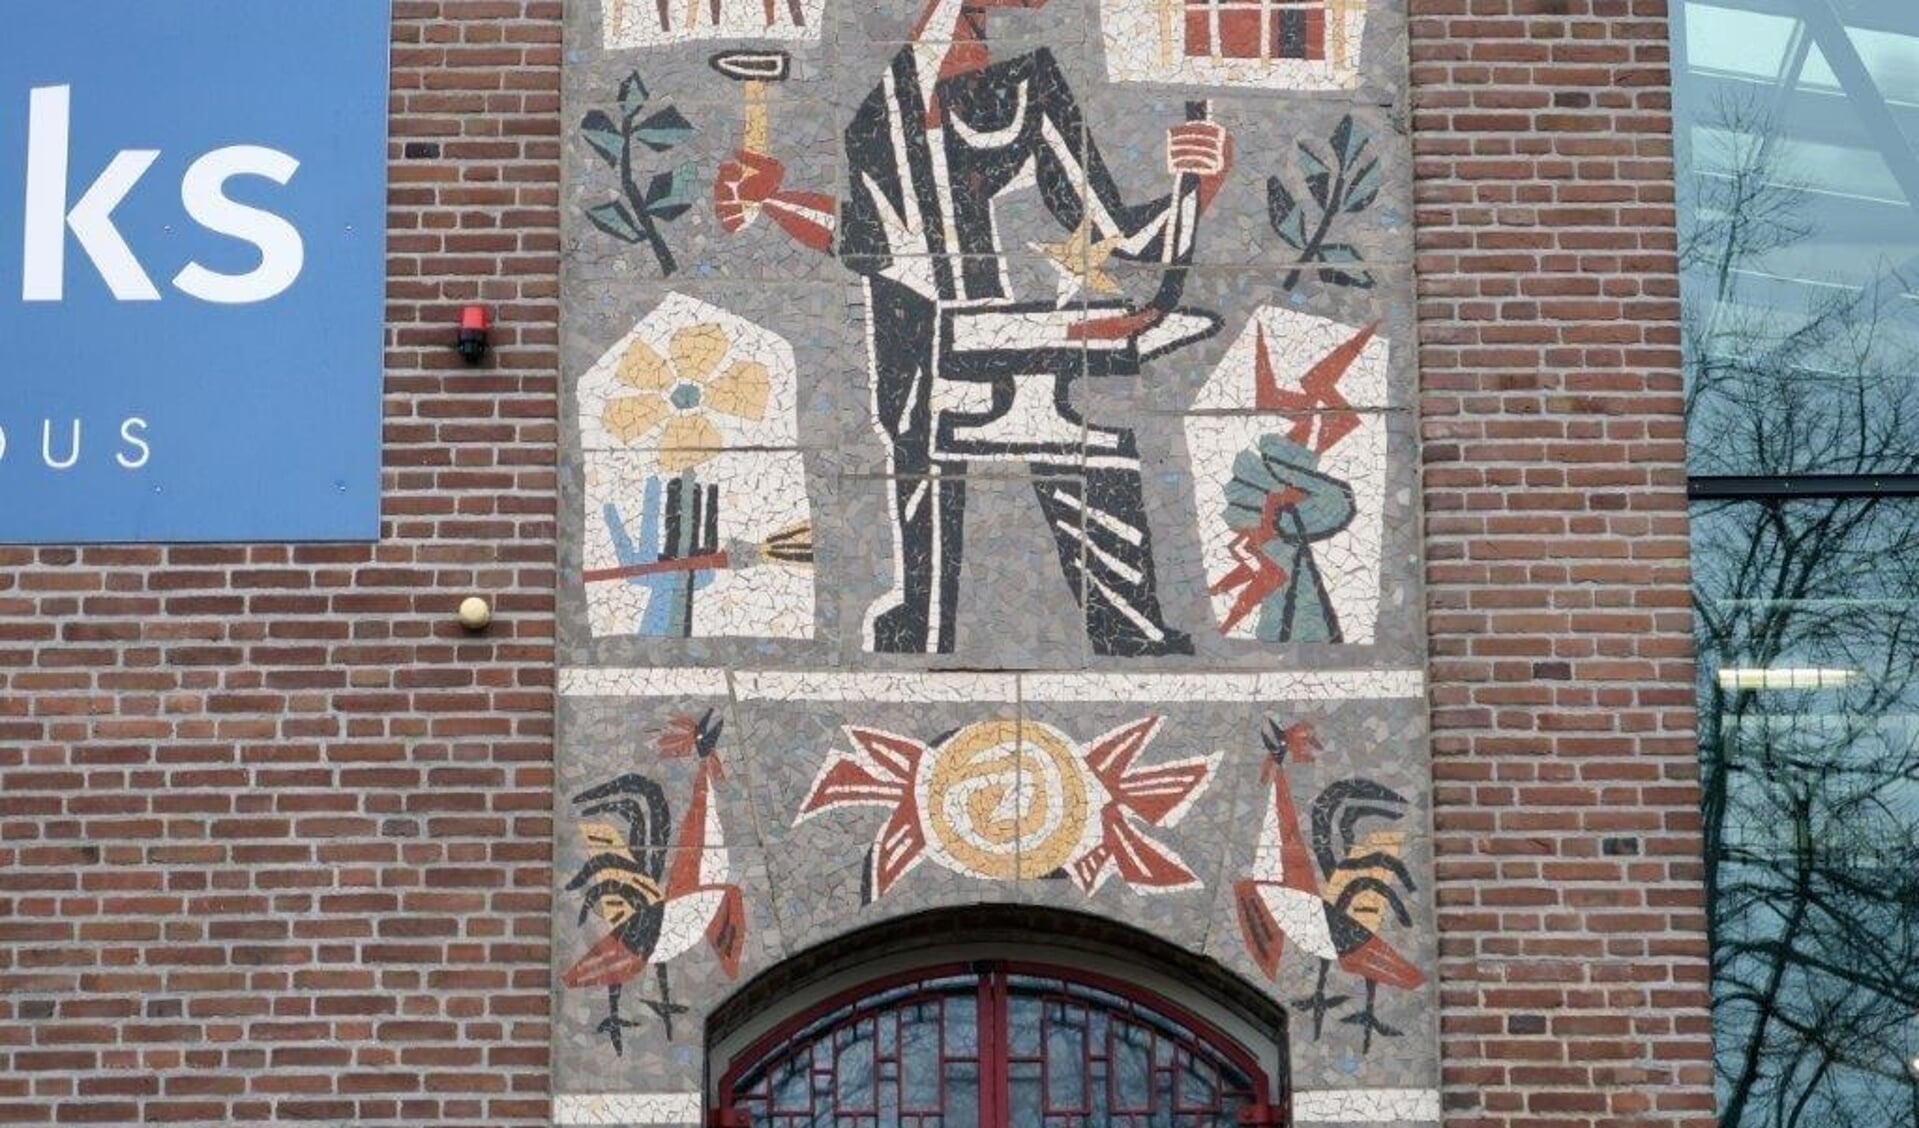  Het mozaïek van het Rijks VMBO aan de Goffertweg 20 in Nijmegen. (Foto: gemeente Nijmegen)